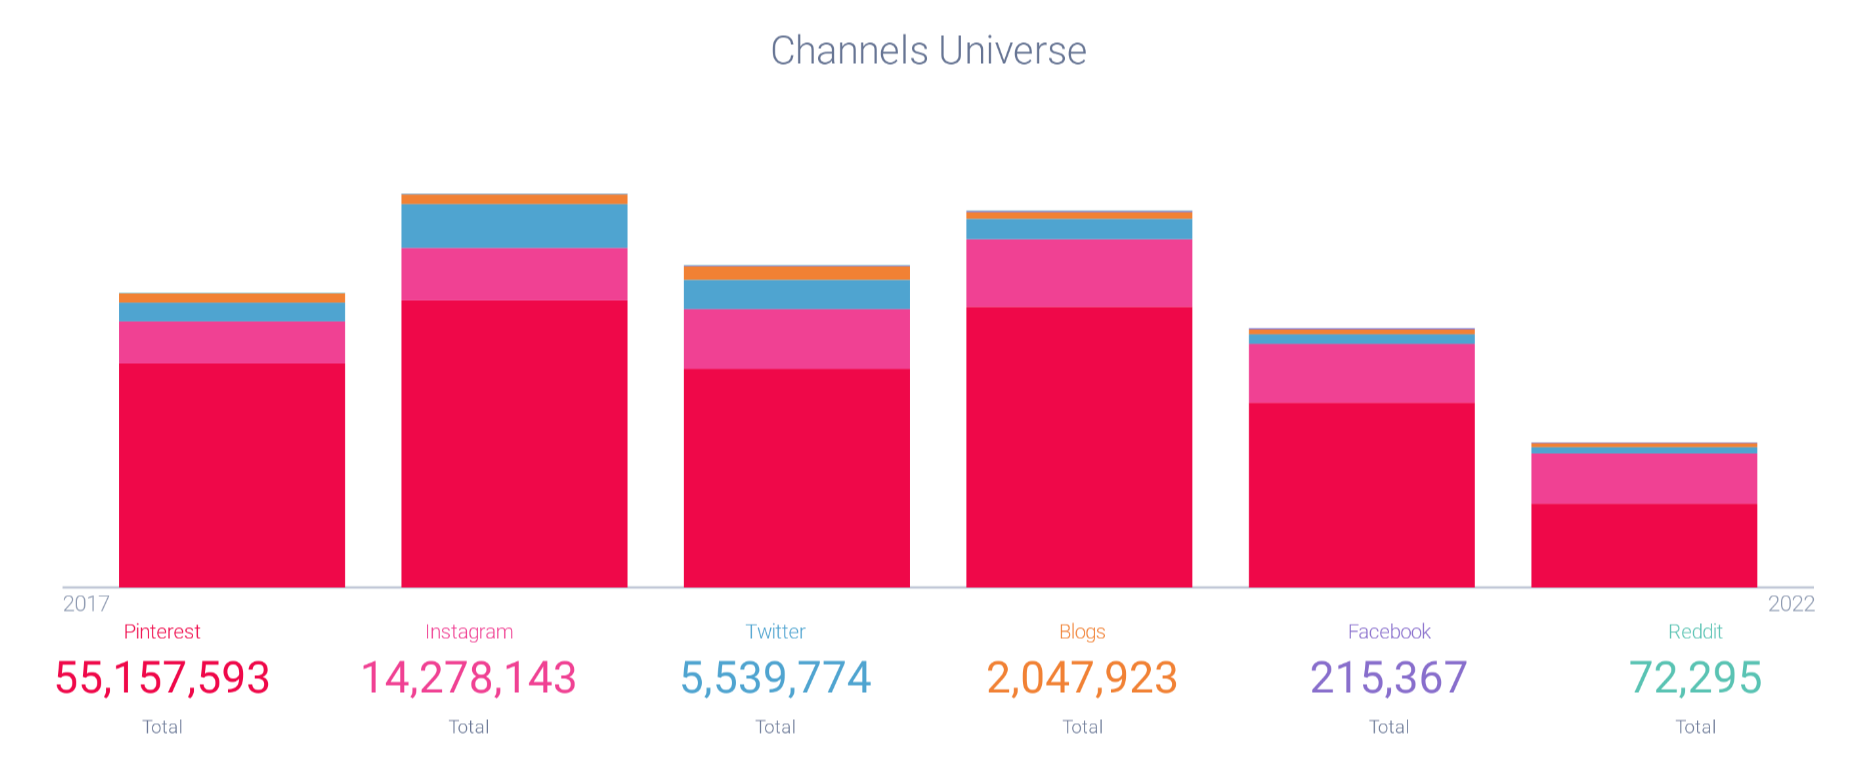 Pinterest channels universe chart